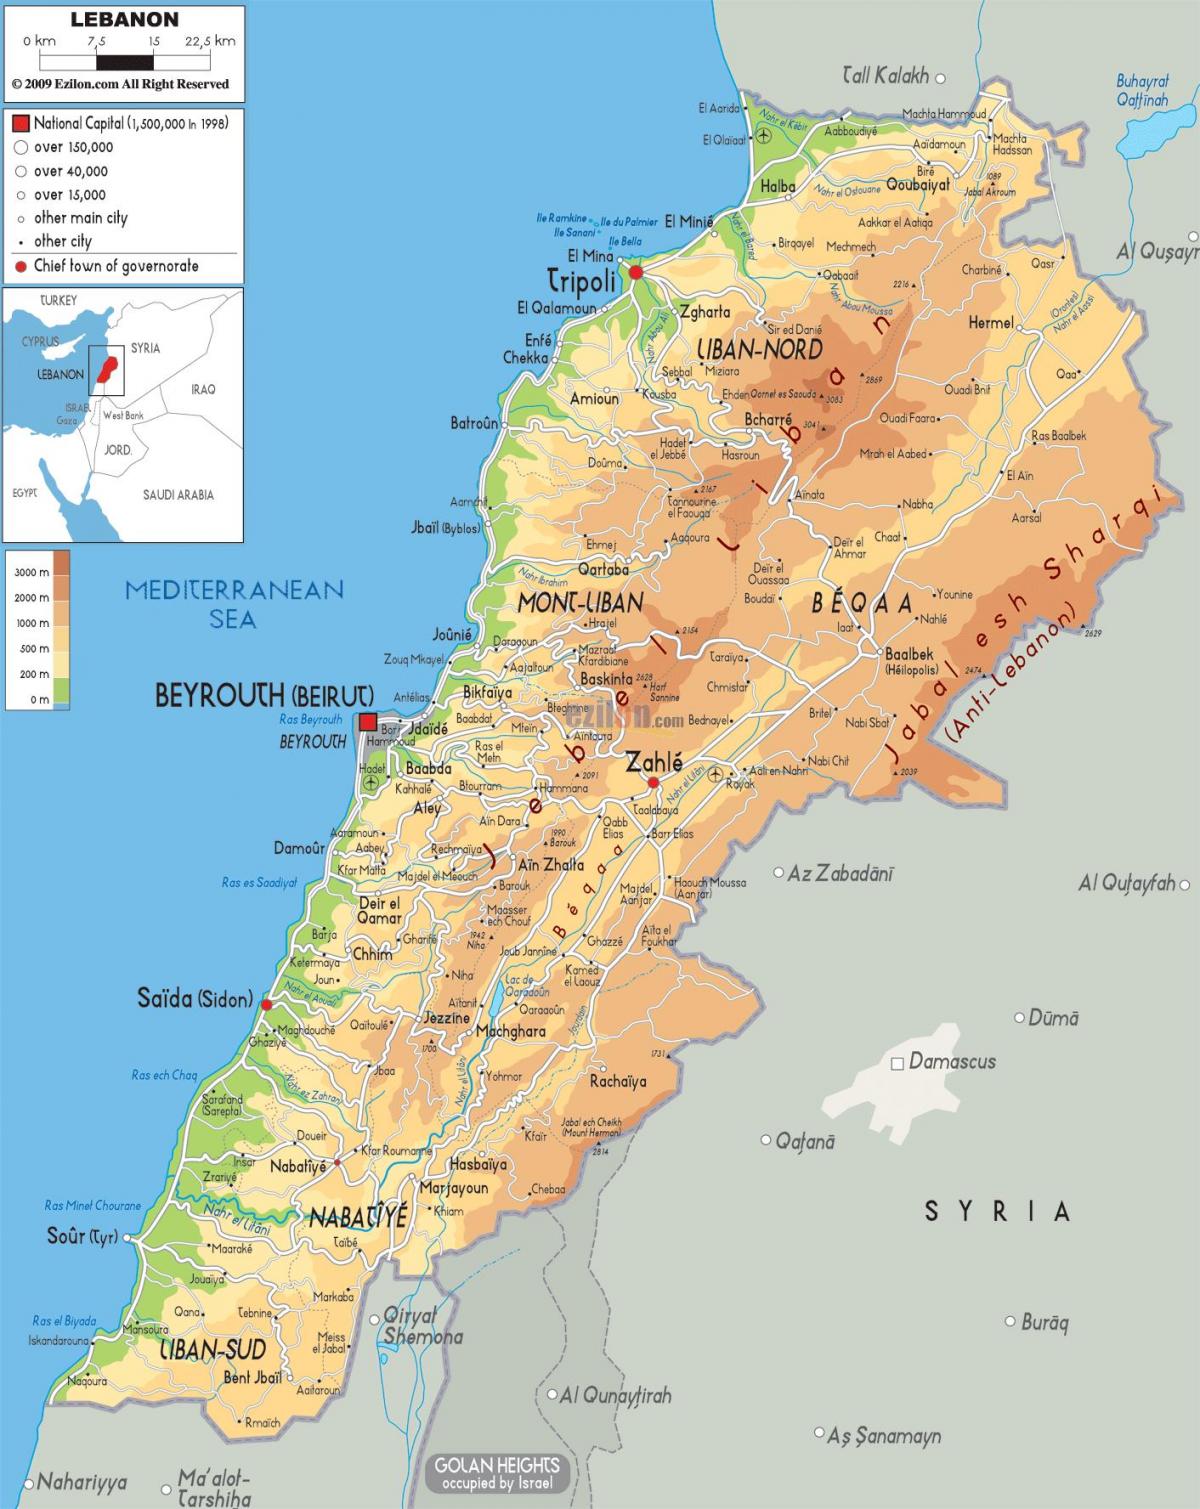 लेबनान के मानचित्र शारीरिक